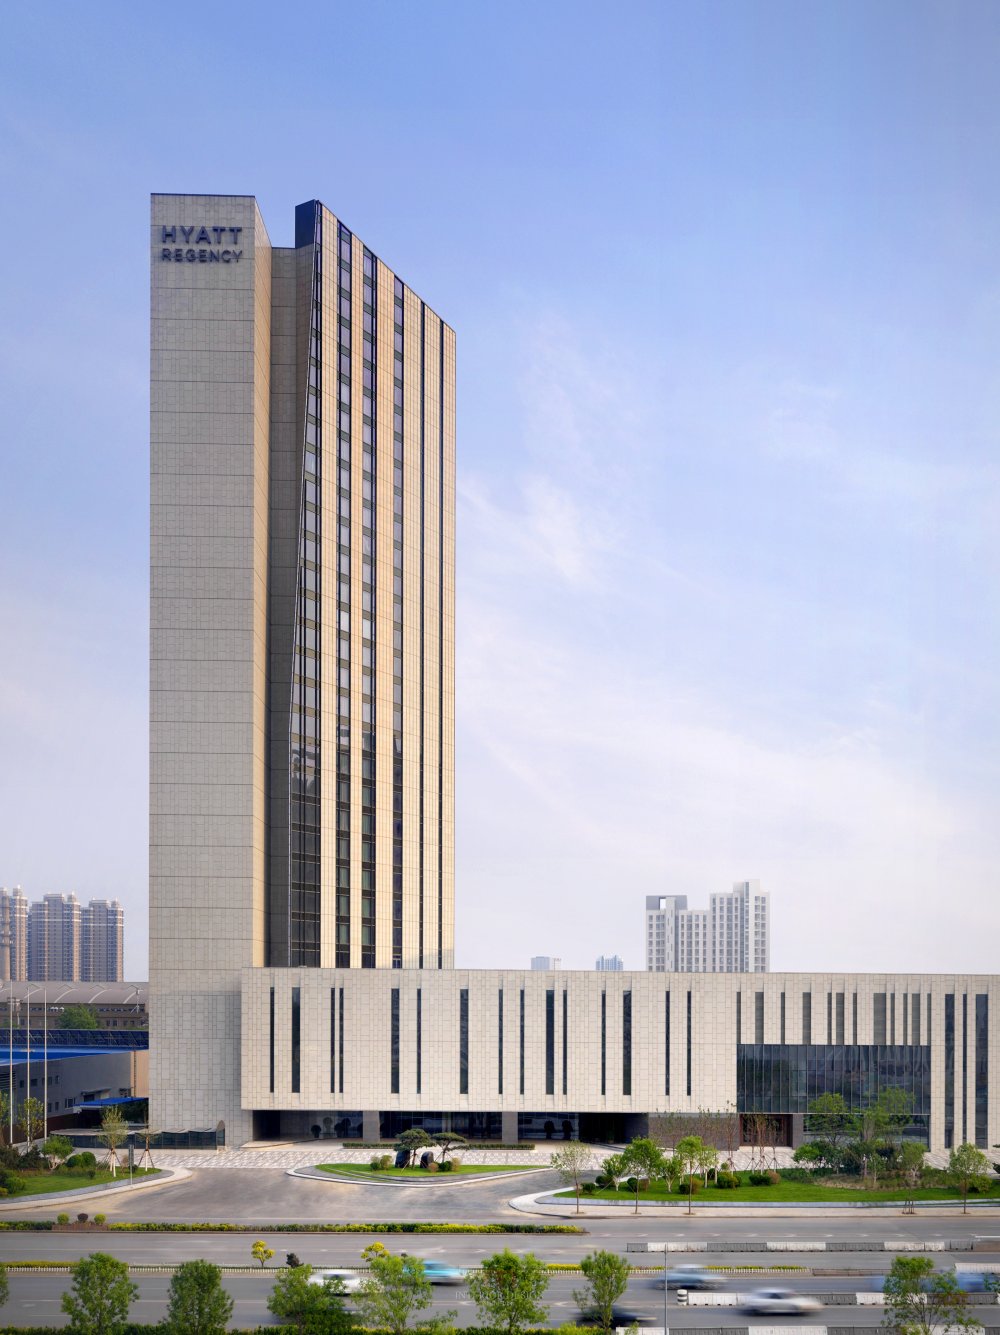 天津凯悦酒店(高清官方摄影) Hyatt Regency Tianjin East_Hyatt Regency Tianjin East-PRINT (7).jpg